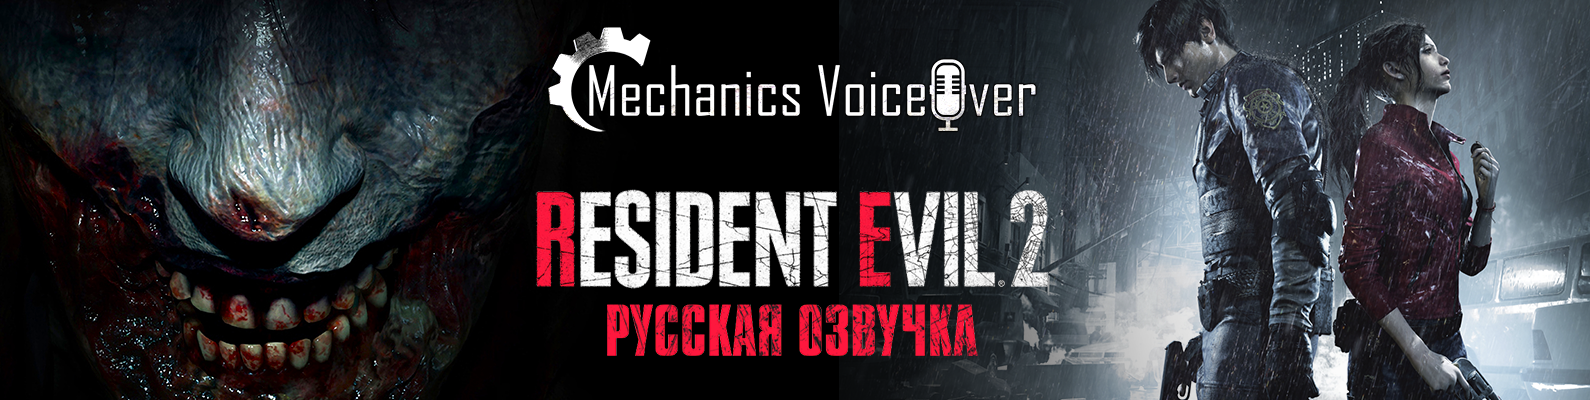 Resident Evil 2 - Примеры голосов Ады Вонг, Бена и Кендо в озвучке от R.G. MVO